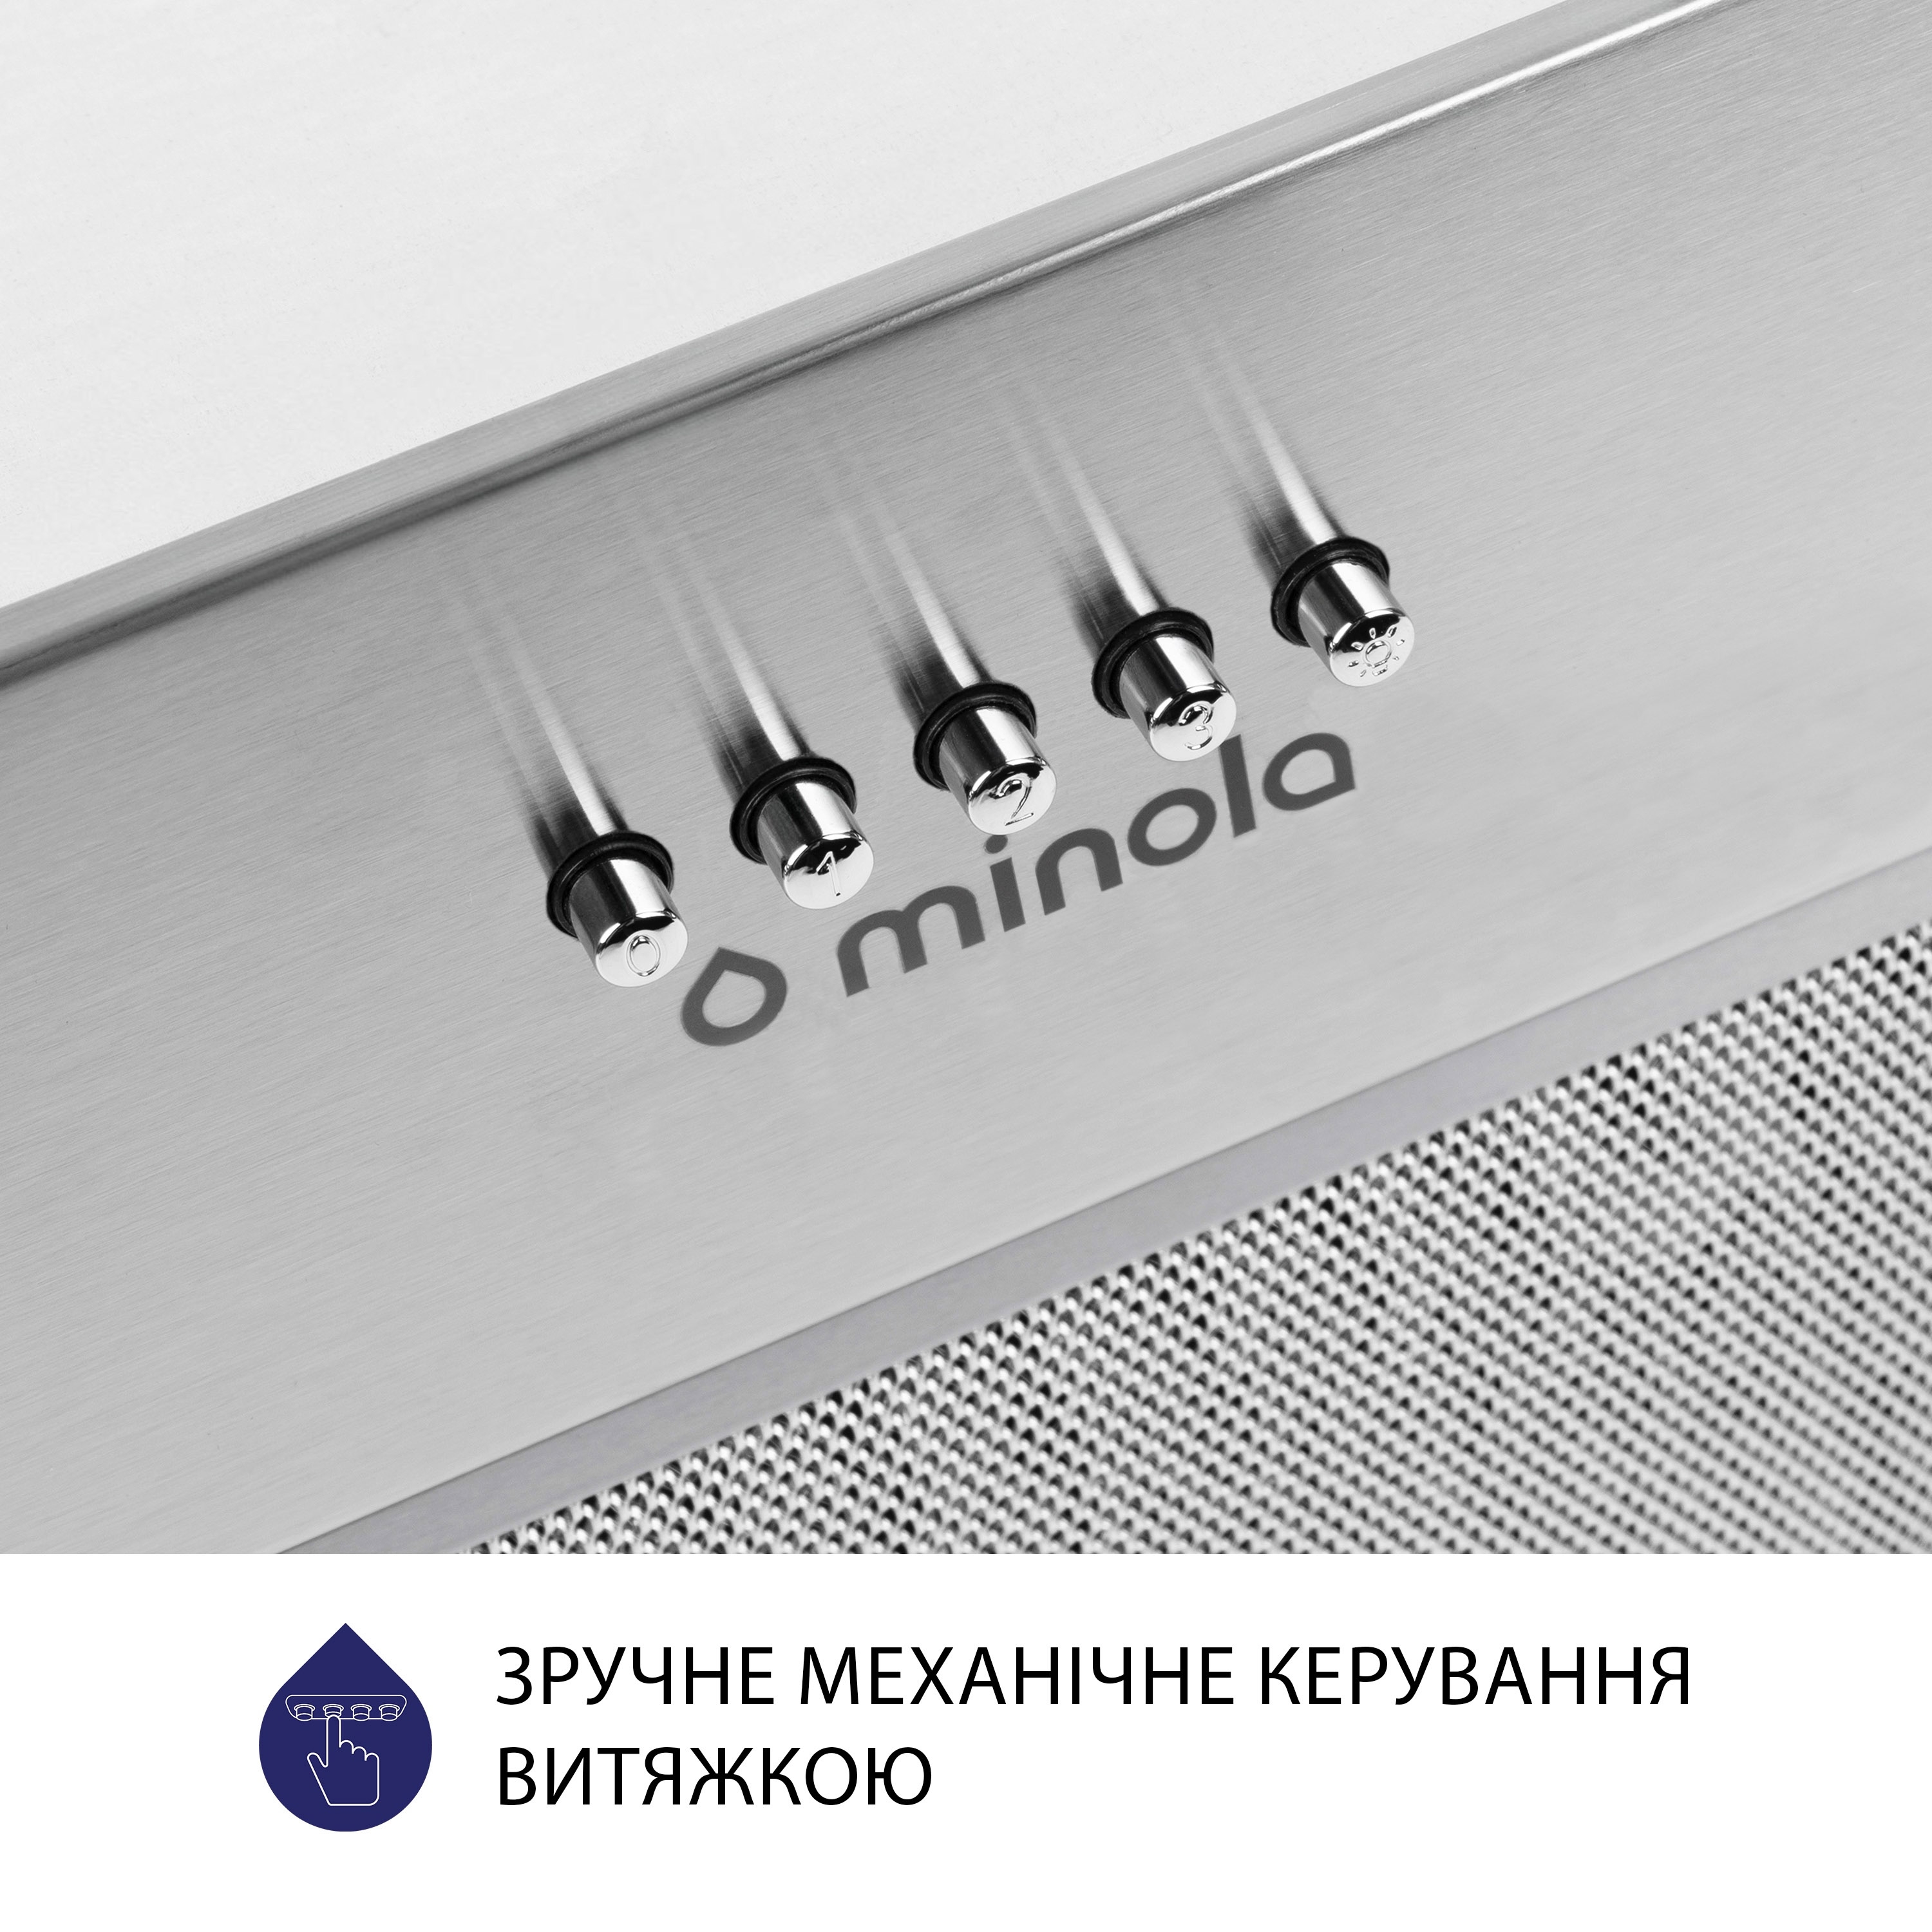 Витяжка кухонная полновстраиваемая Minola HBI 5327 I 800 LED инструкция - изображение 6